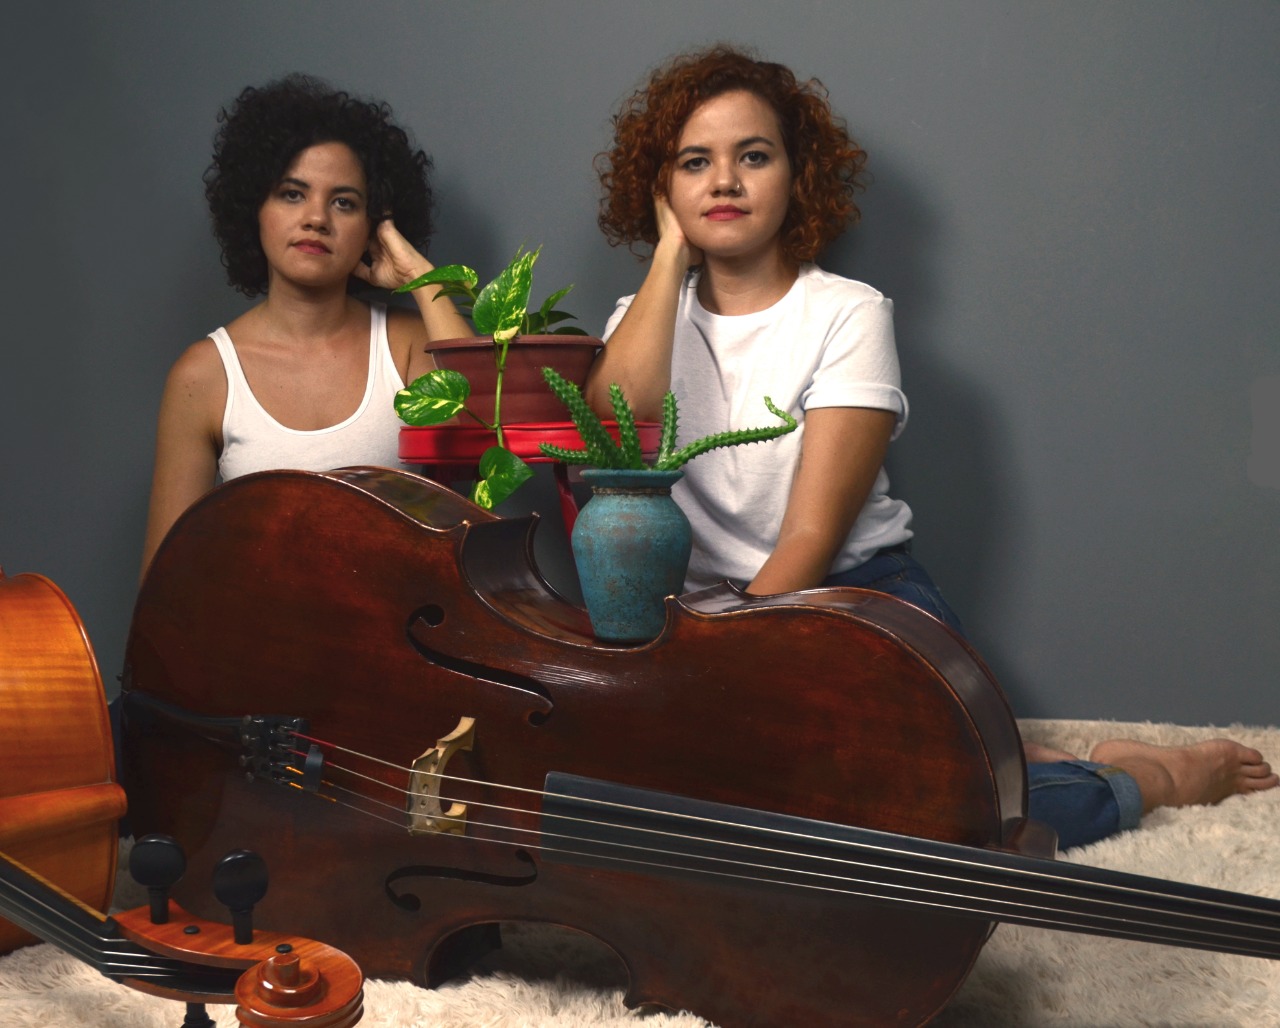 Duo “Bravia”, composto pelas gêmeas Mayra e Mayara Ferreira. Imagem_ Reprodução_Mayra Ferreira(5)